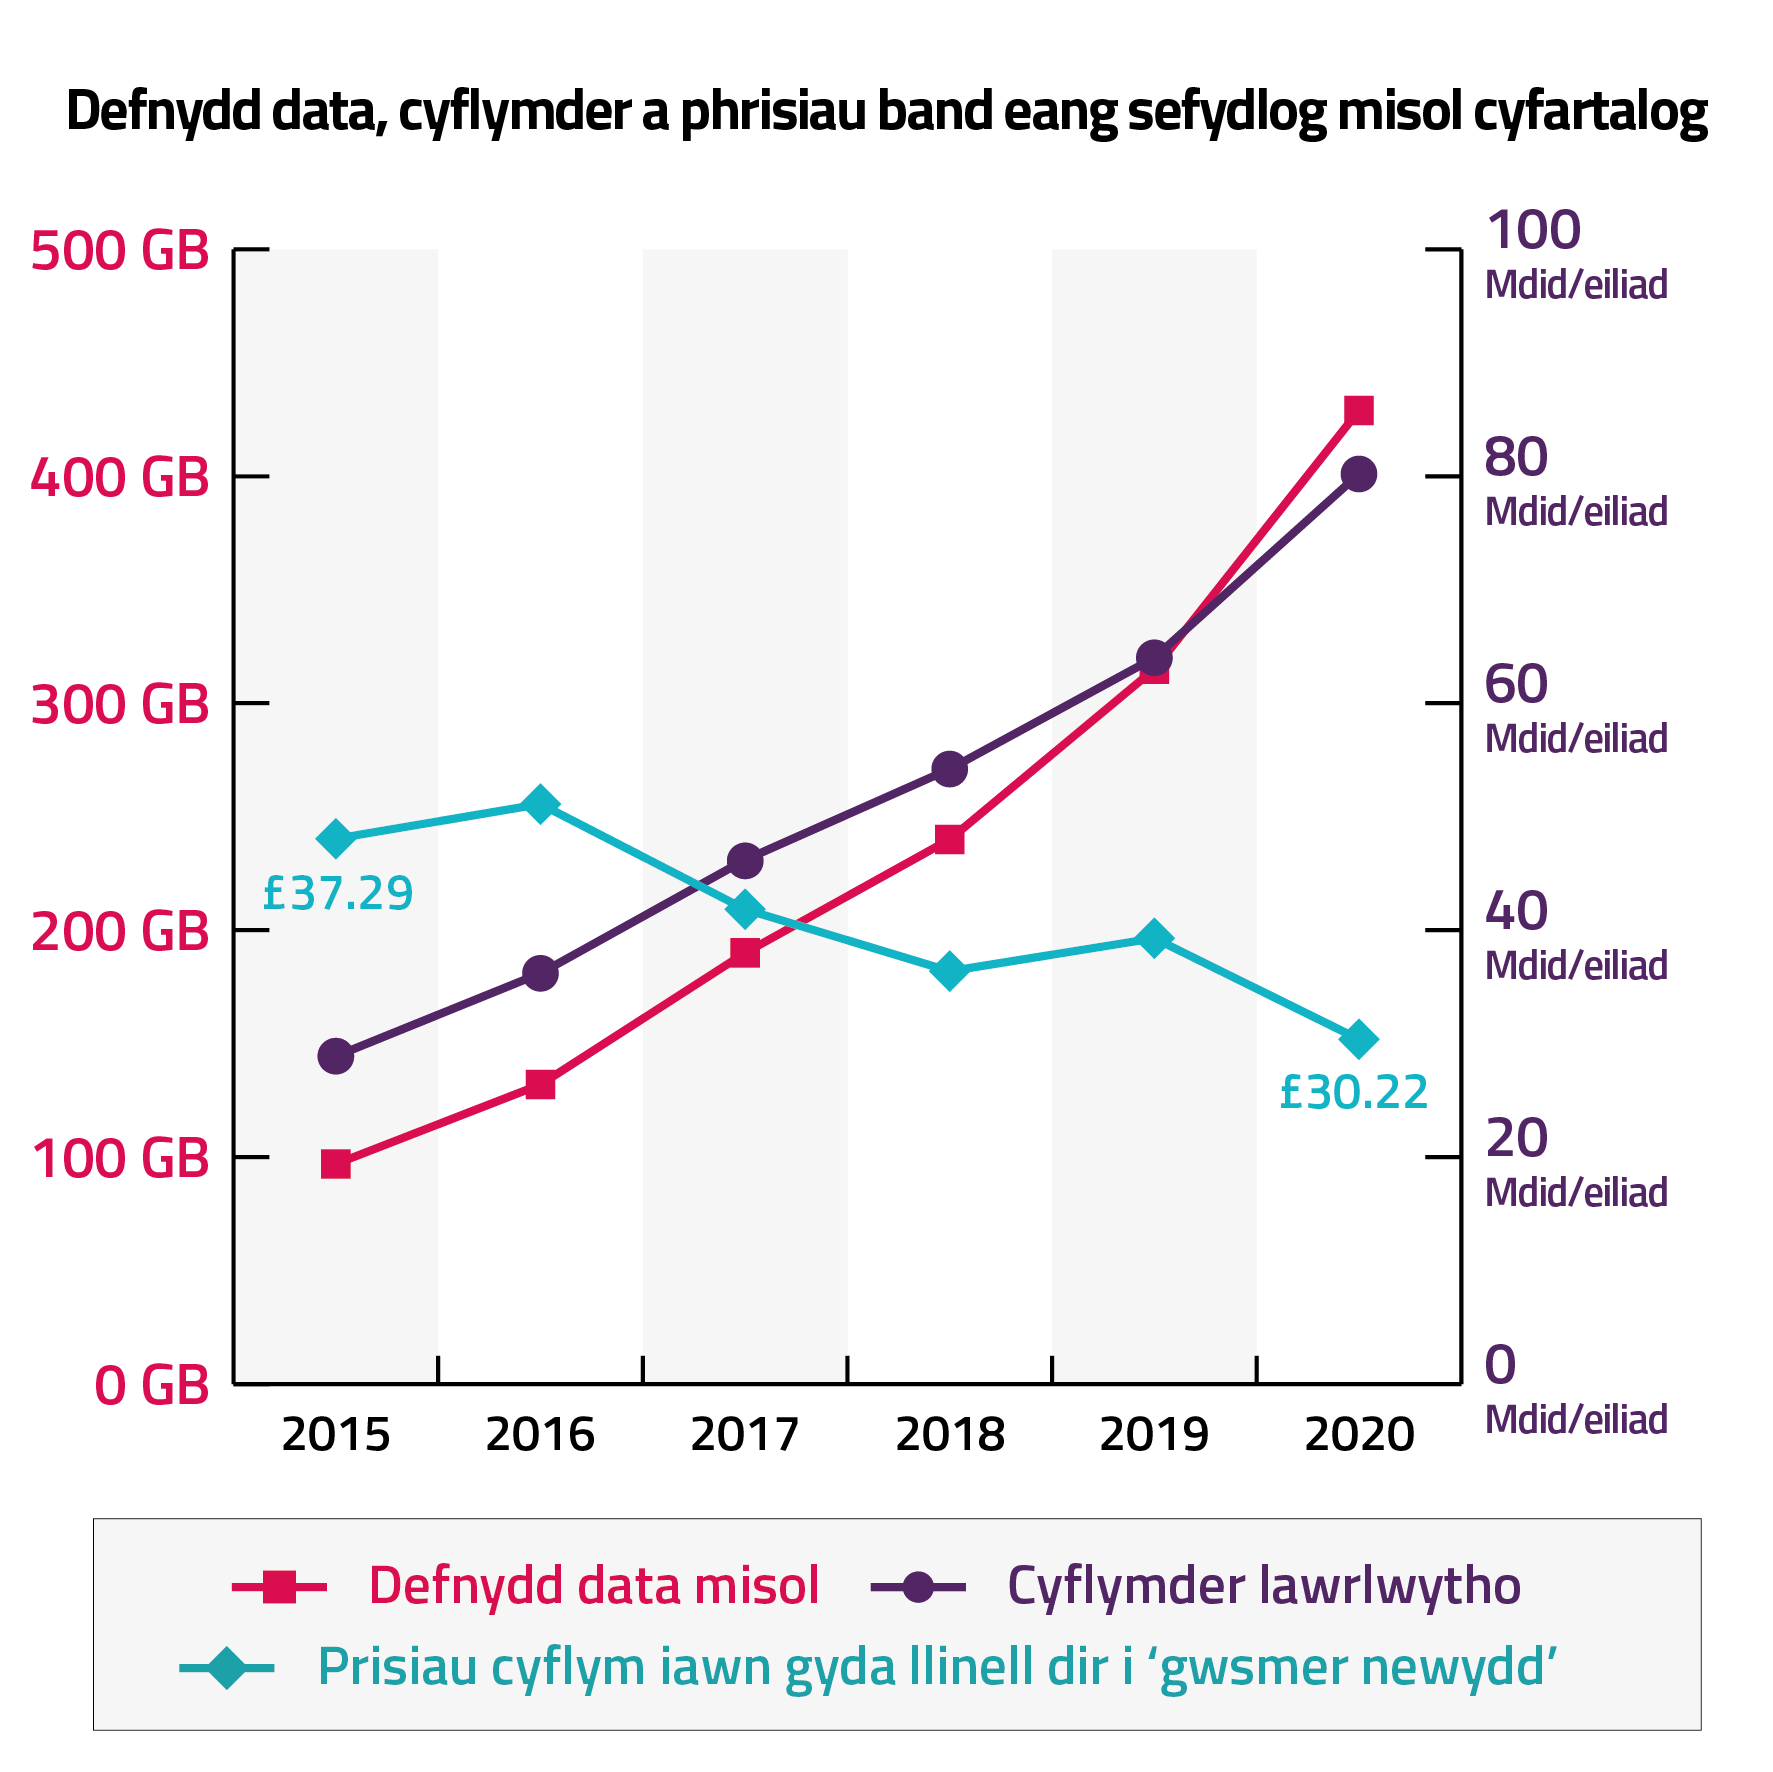 Graff yn dangos defnydd data, cyflymder a phrisiau band eang sefydlog misol cyfartalog rhwng 2015 a 2020